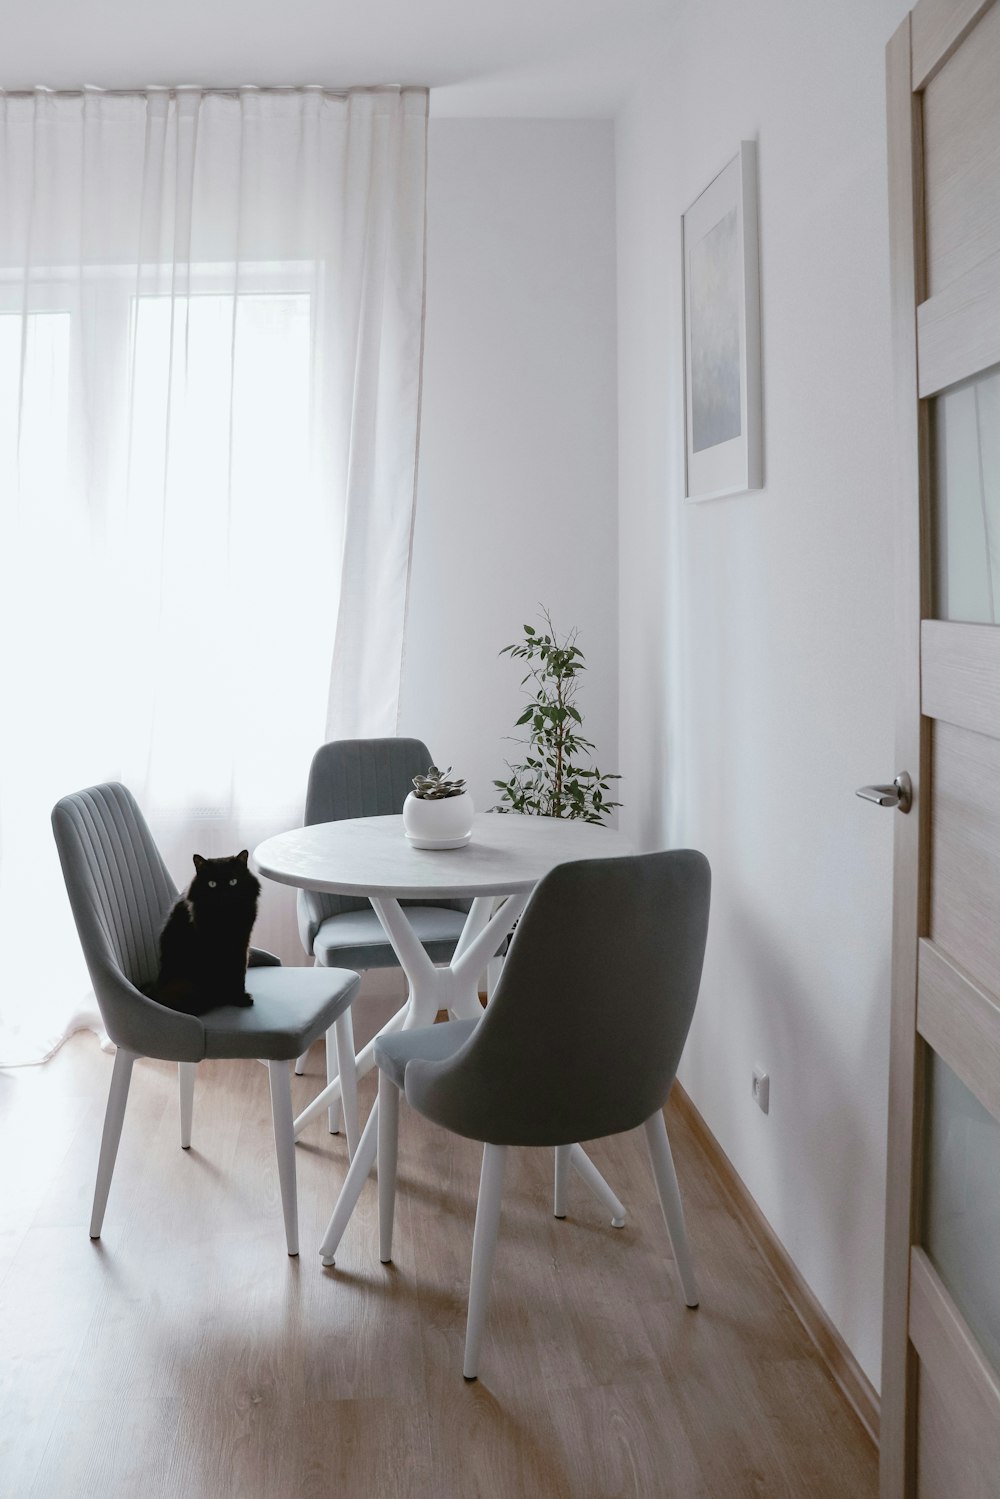 하얀 테이블 위에 앉아 있는 검은 고양이